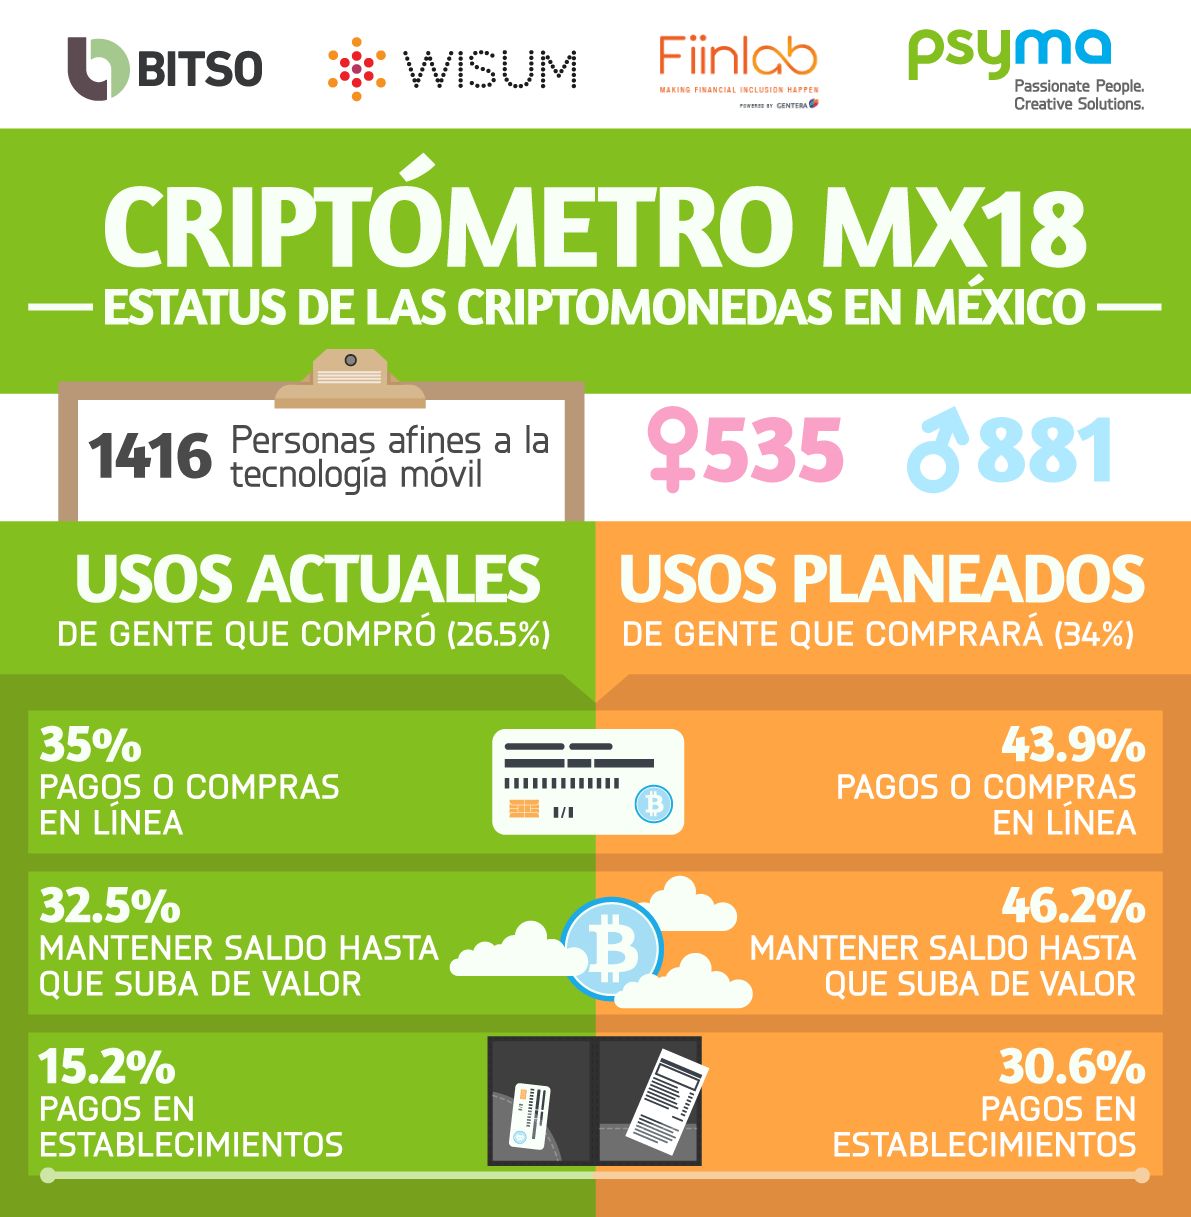 Medio millón de mexicanos usa criptomonedas, revela Criptómetro MX18